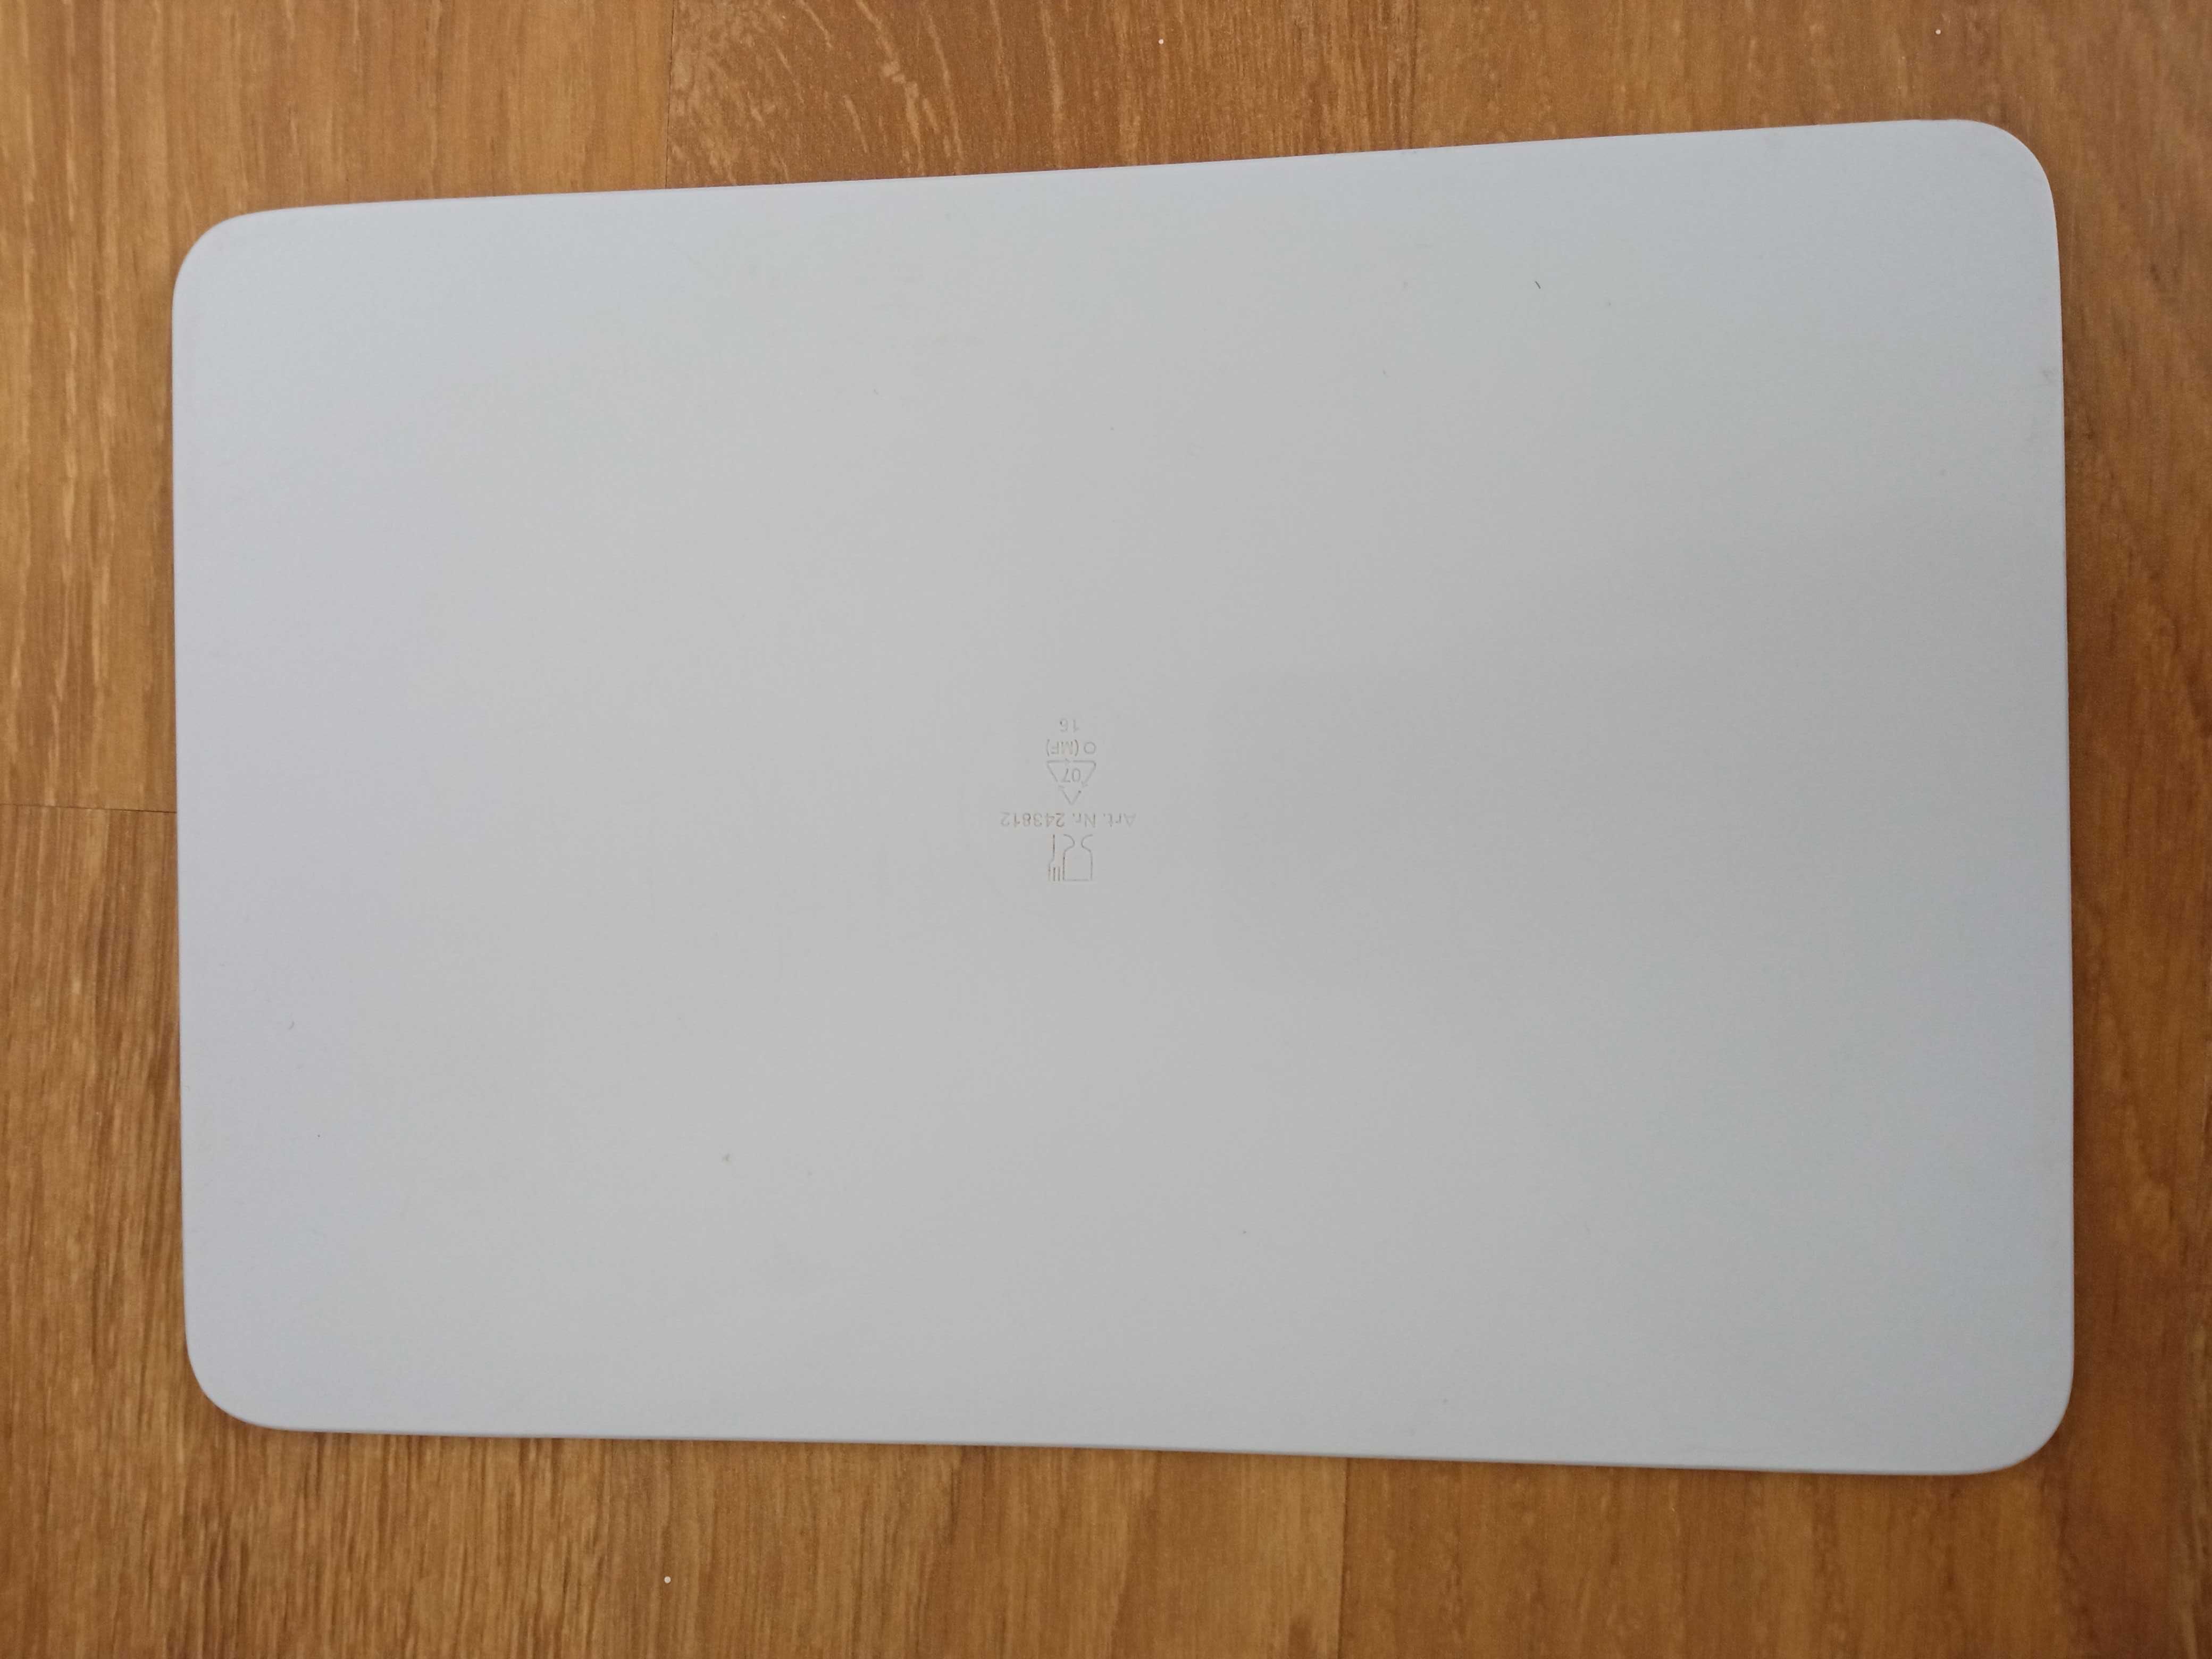 Deska do krojenia plastikowa kolorowa średnia 23,5 x 16 cm